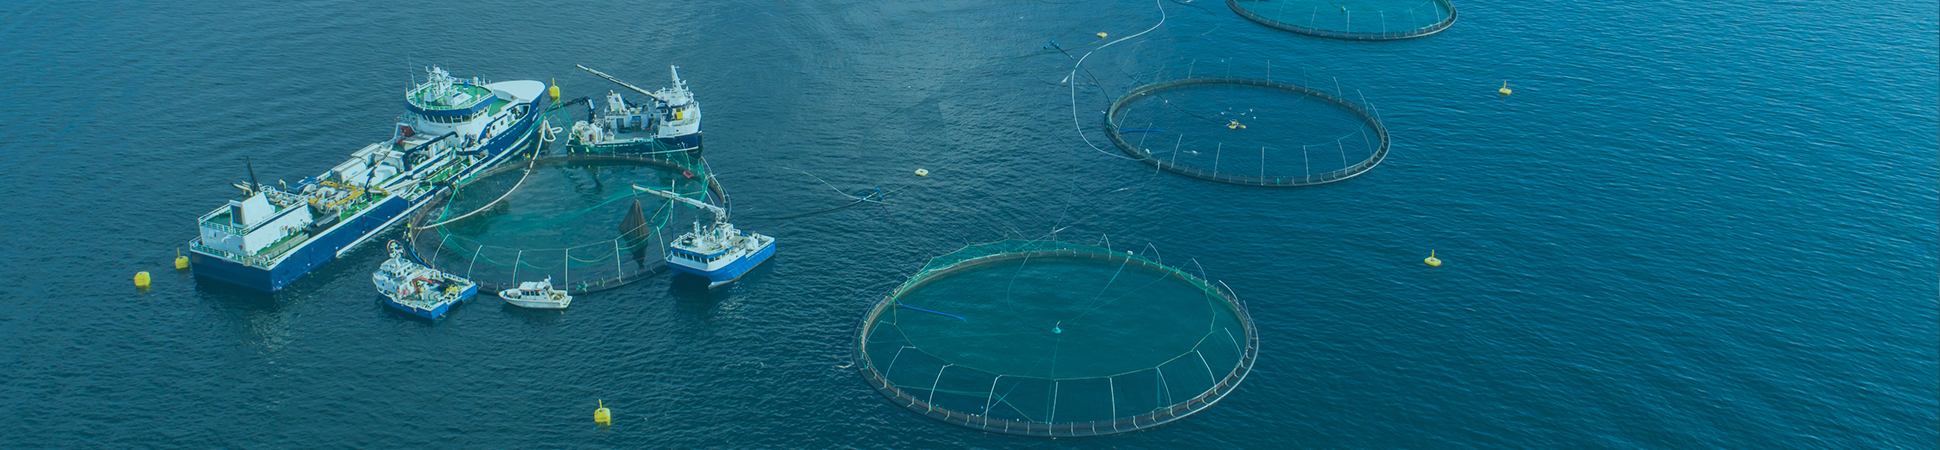 Market Fit: Estrategia para hacer Negocios en Escocia, Aquaculture UK